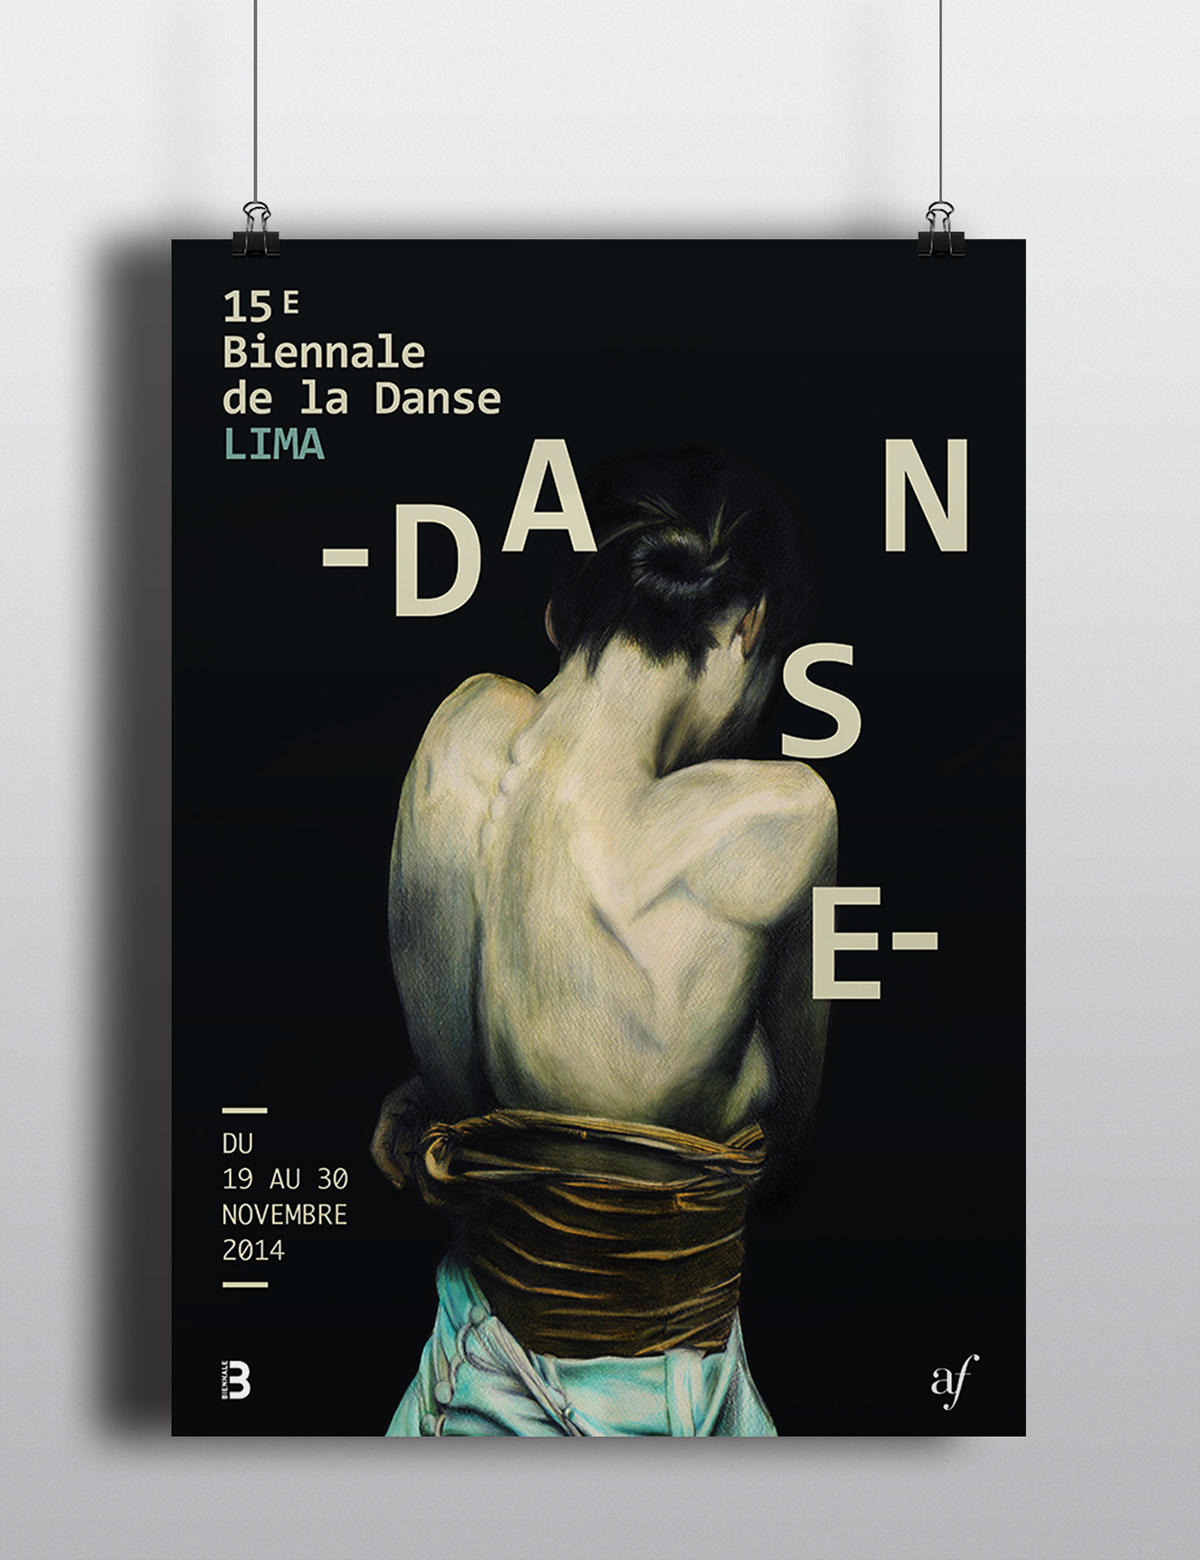 Biennale danse lima poster Realism